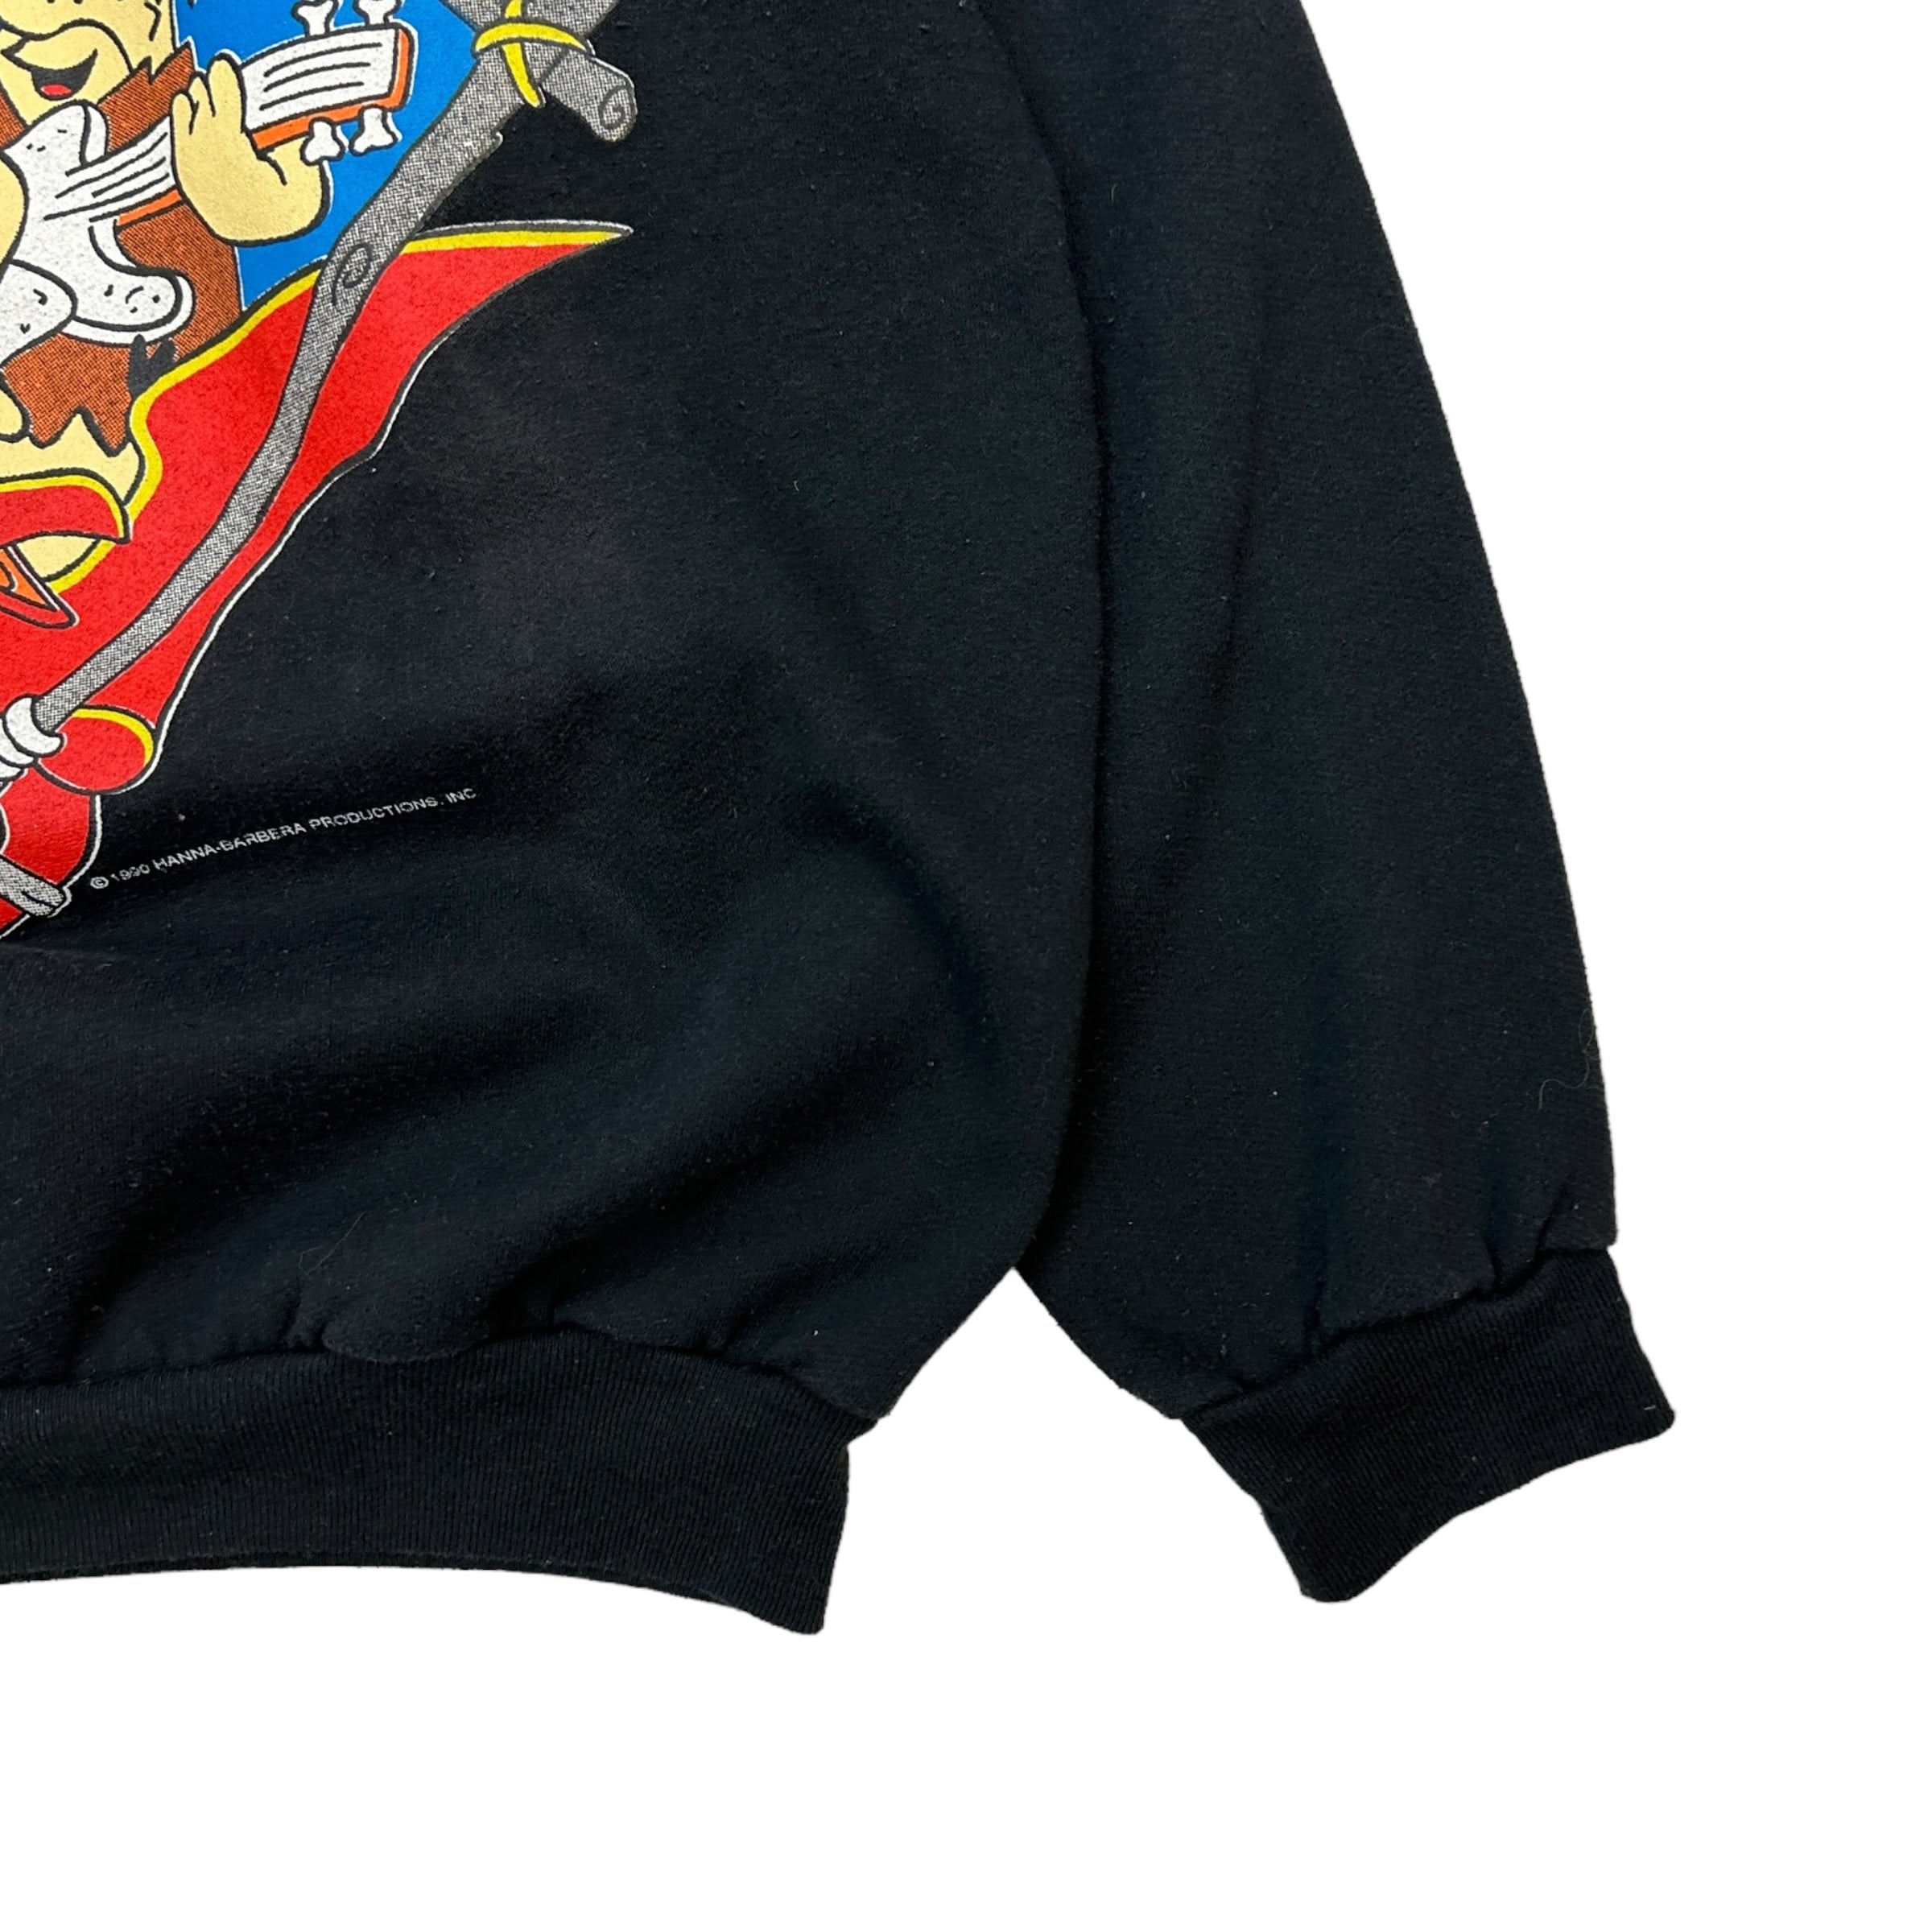 1990 The Flintstones Bedrock&Roll Black Crewneck Sweatshirt